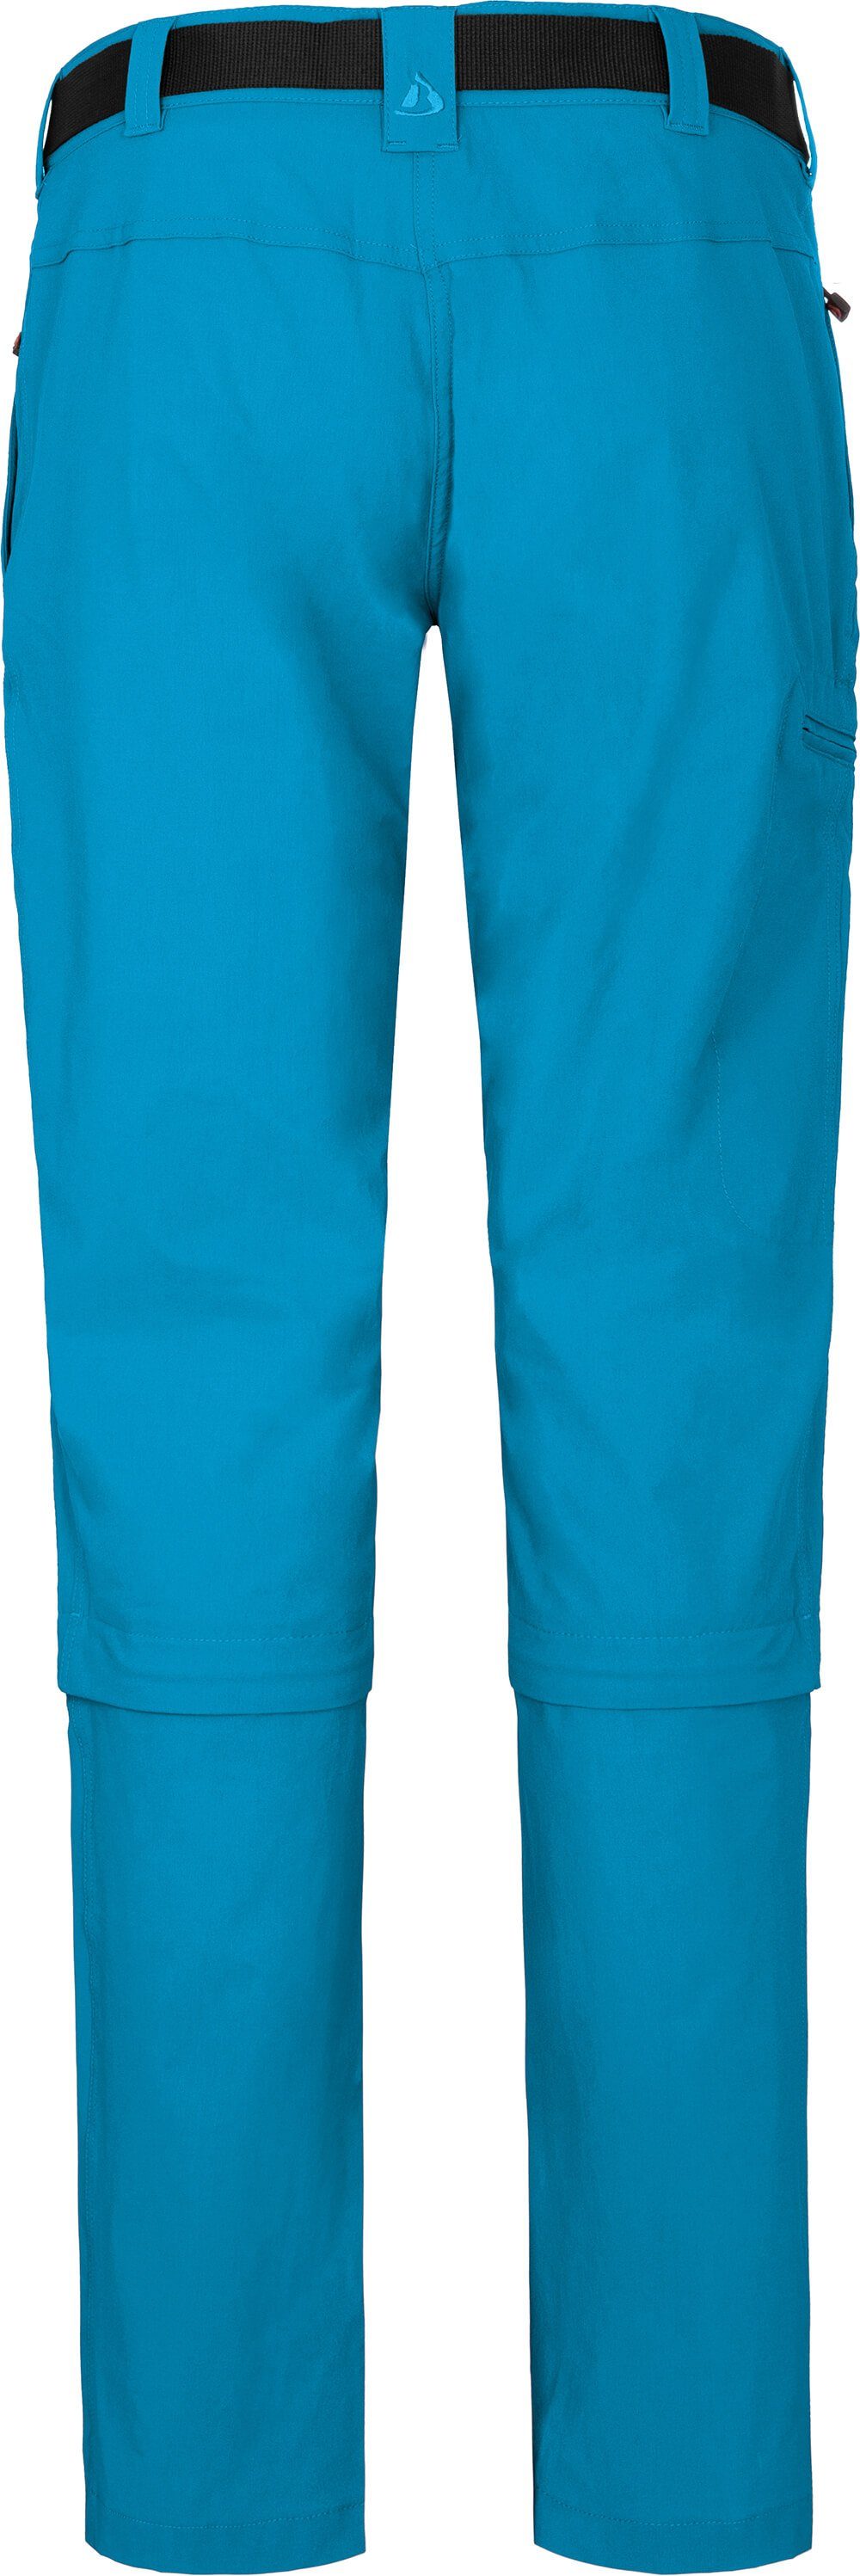 Normalgrößen, Zipp-Off Damen Zip-off-Hose pflegeleicht, (slim) Bergson Wanderhose, blau vielseitig Ozean YORK